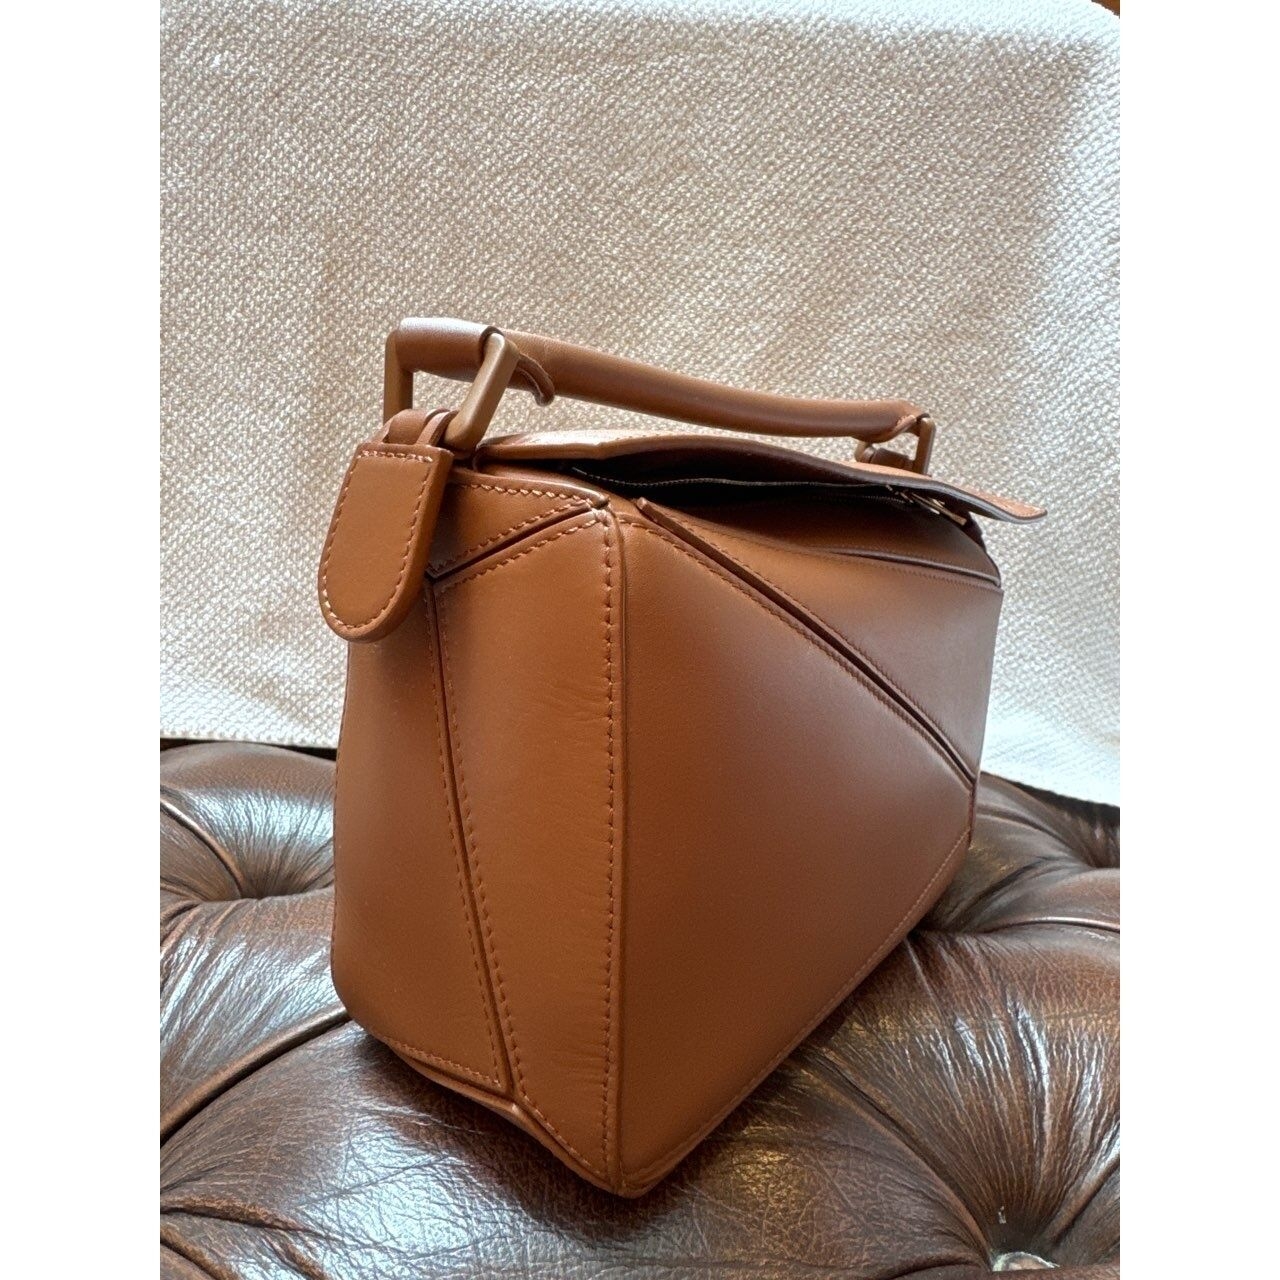 Loewe Mini Puzzle Tan Sling Bag